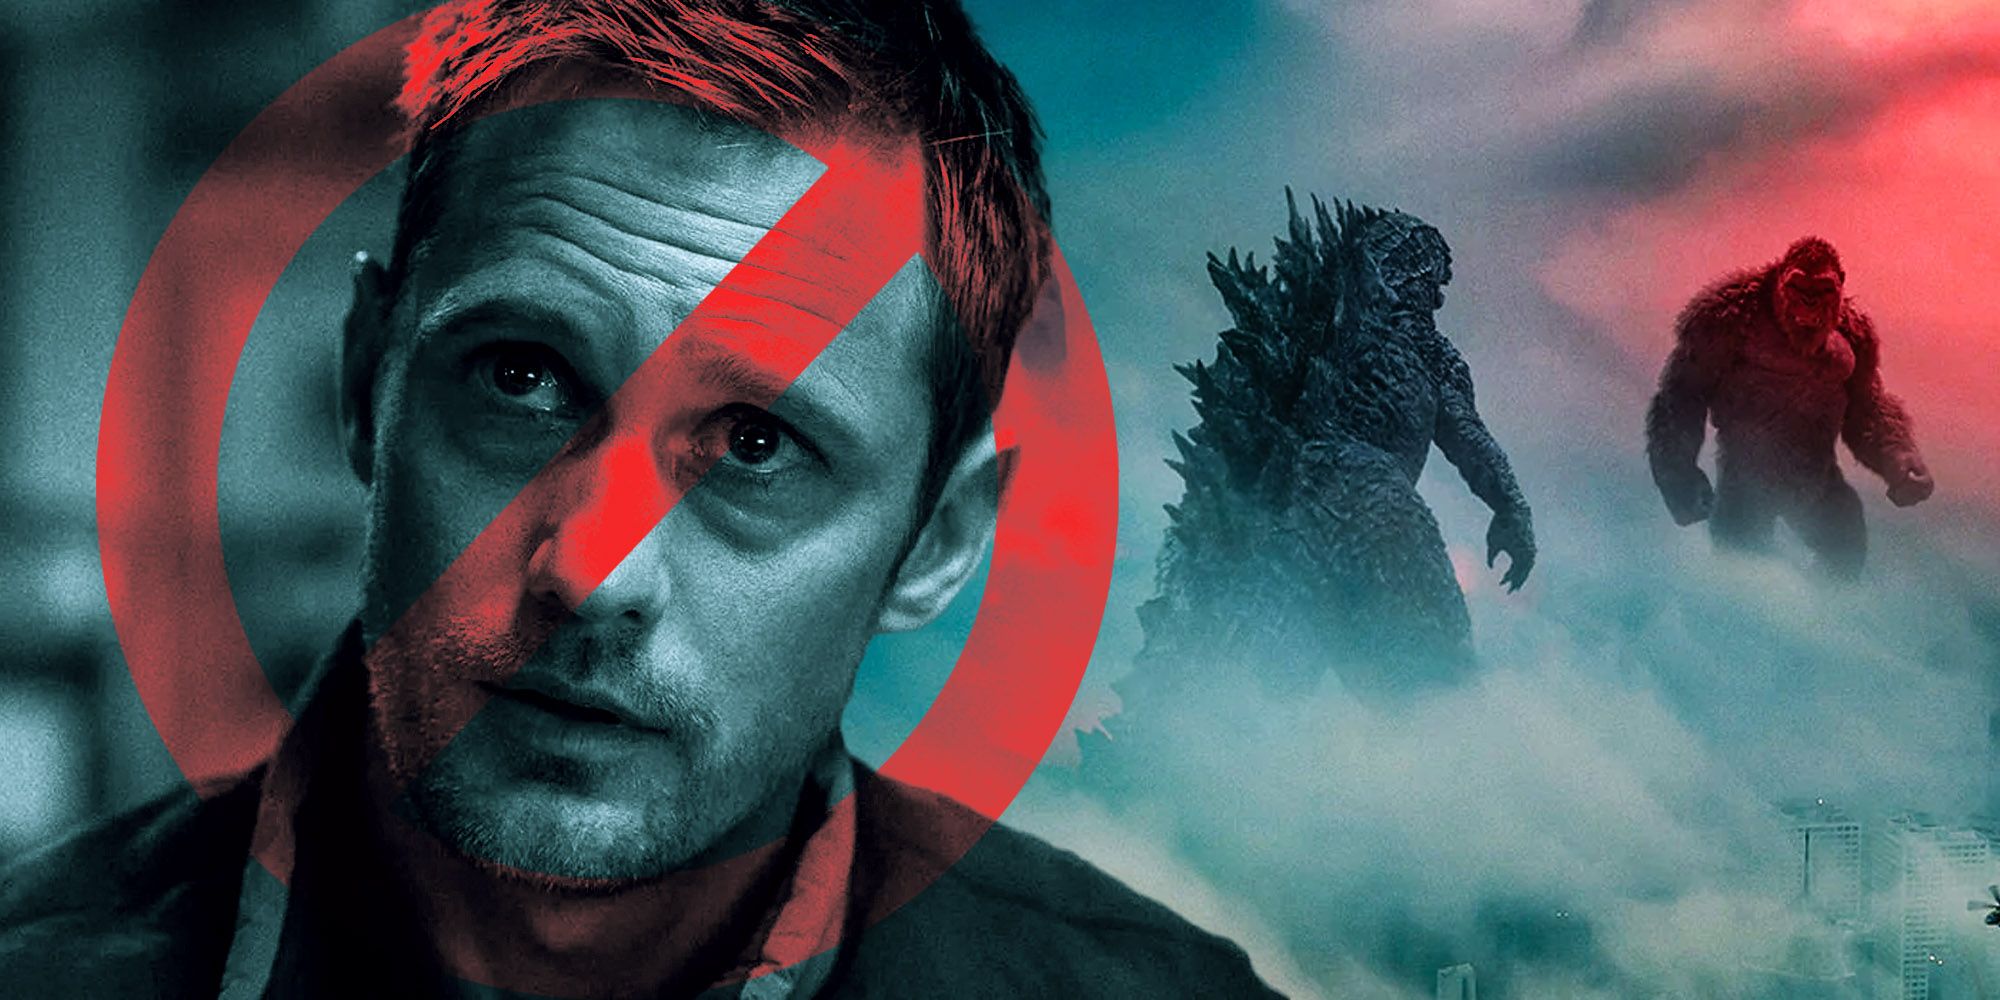 Alexander skarsgard Godzilla vs kong Next monster movie no humans